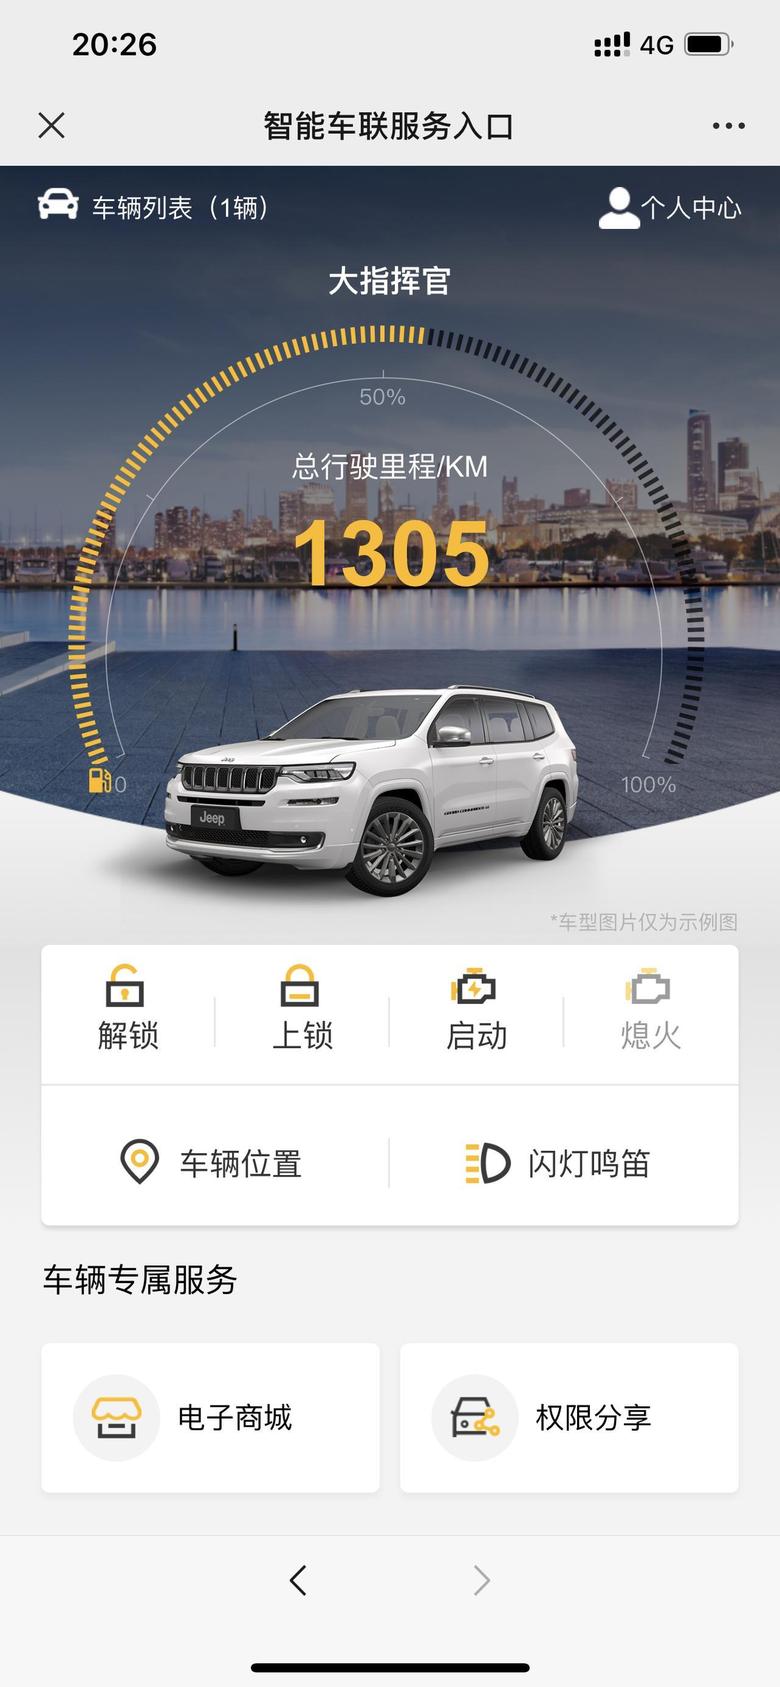 大指挥官前500公里重庆市区路况评论12.5，后800公里700公里高速，100公里国道评论7.0。供大家参考。